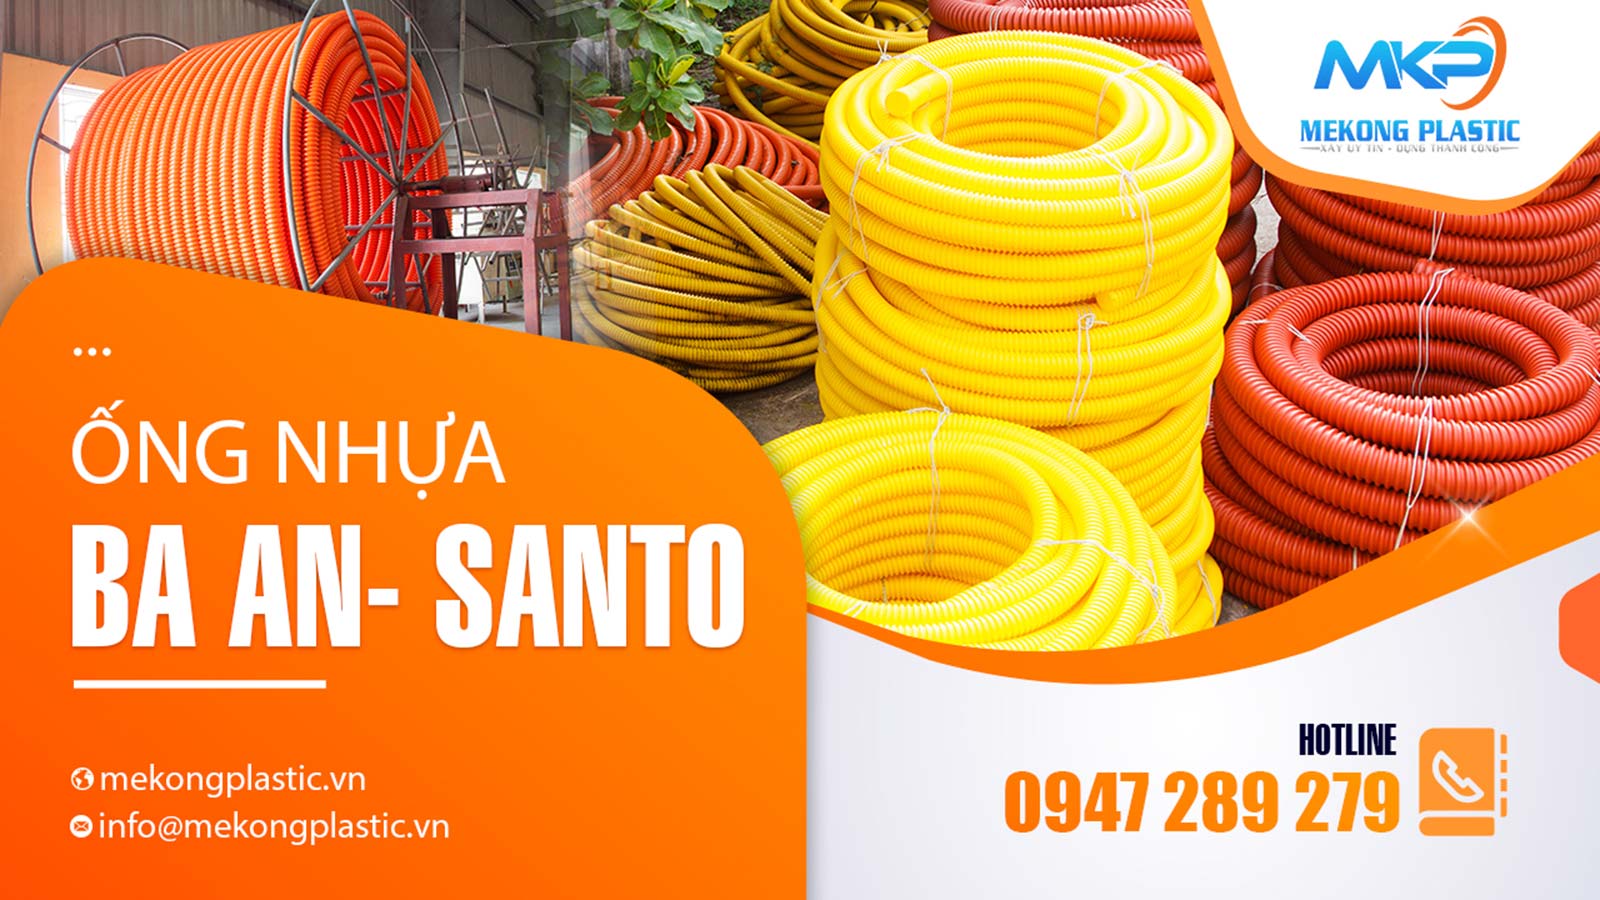 Tìm đâu cơ sở chuyên cung cấp các ống nhựa Santo- Baan chính hãng?